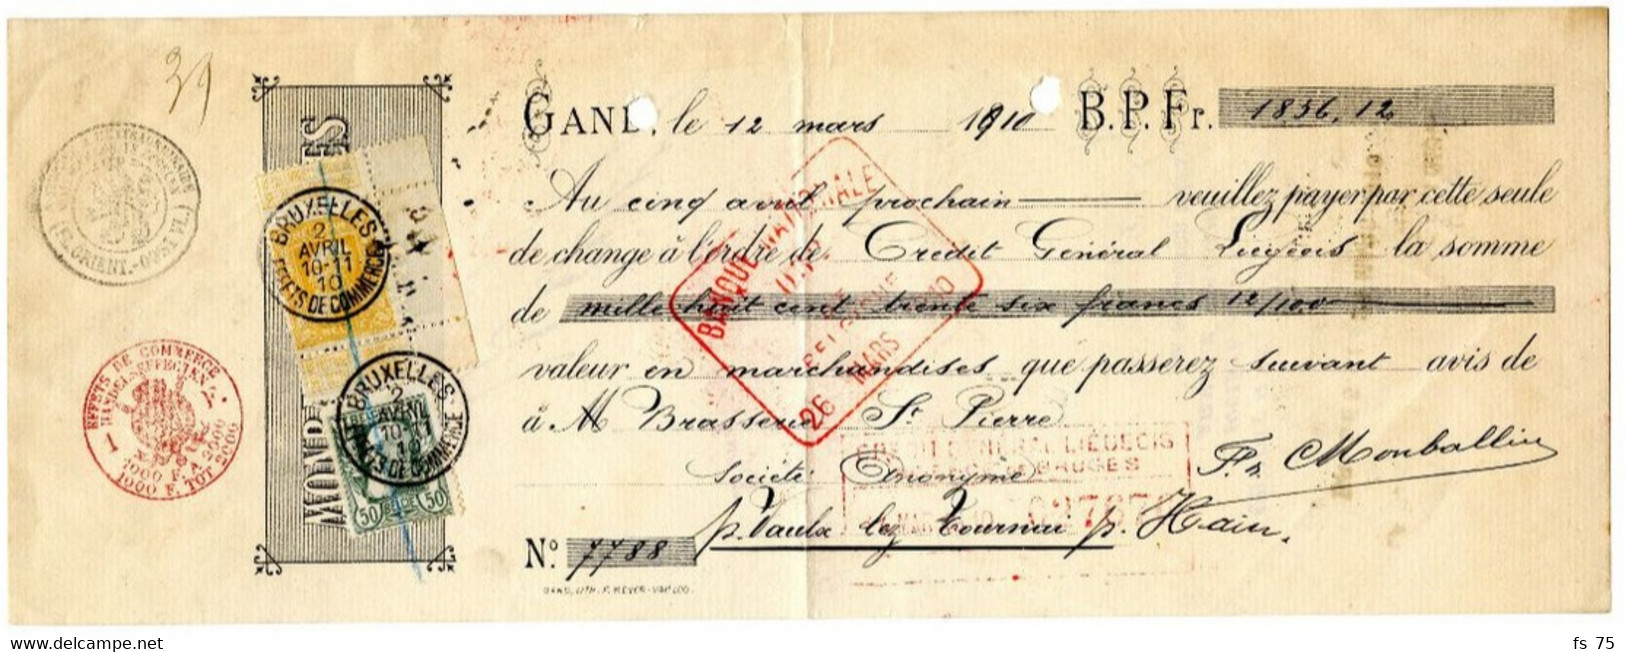 BELGIQUE - COB 78+79 SIMPLE CERCLE BRUXELLES EFFETS DE COMMERCE SUR RECU, 1910 - 1905 Grove Baard